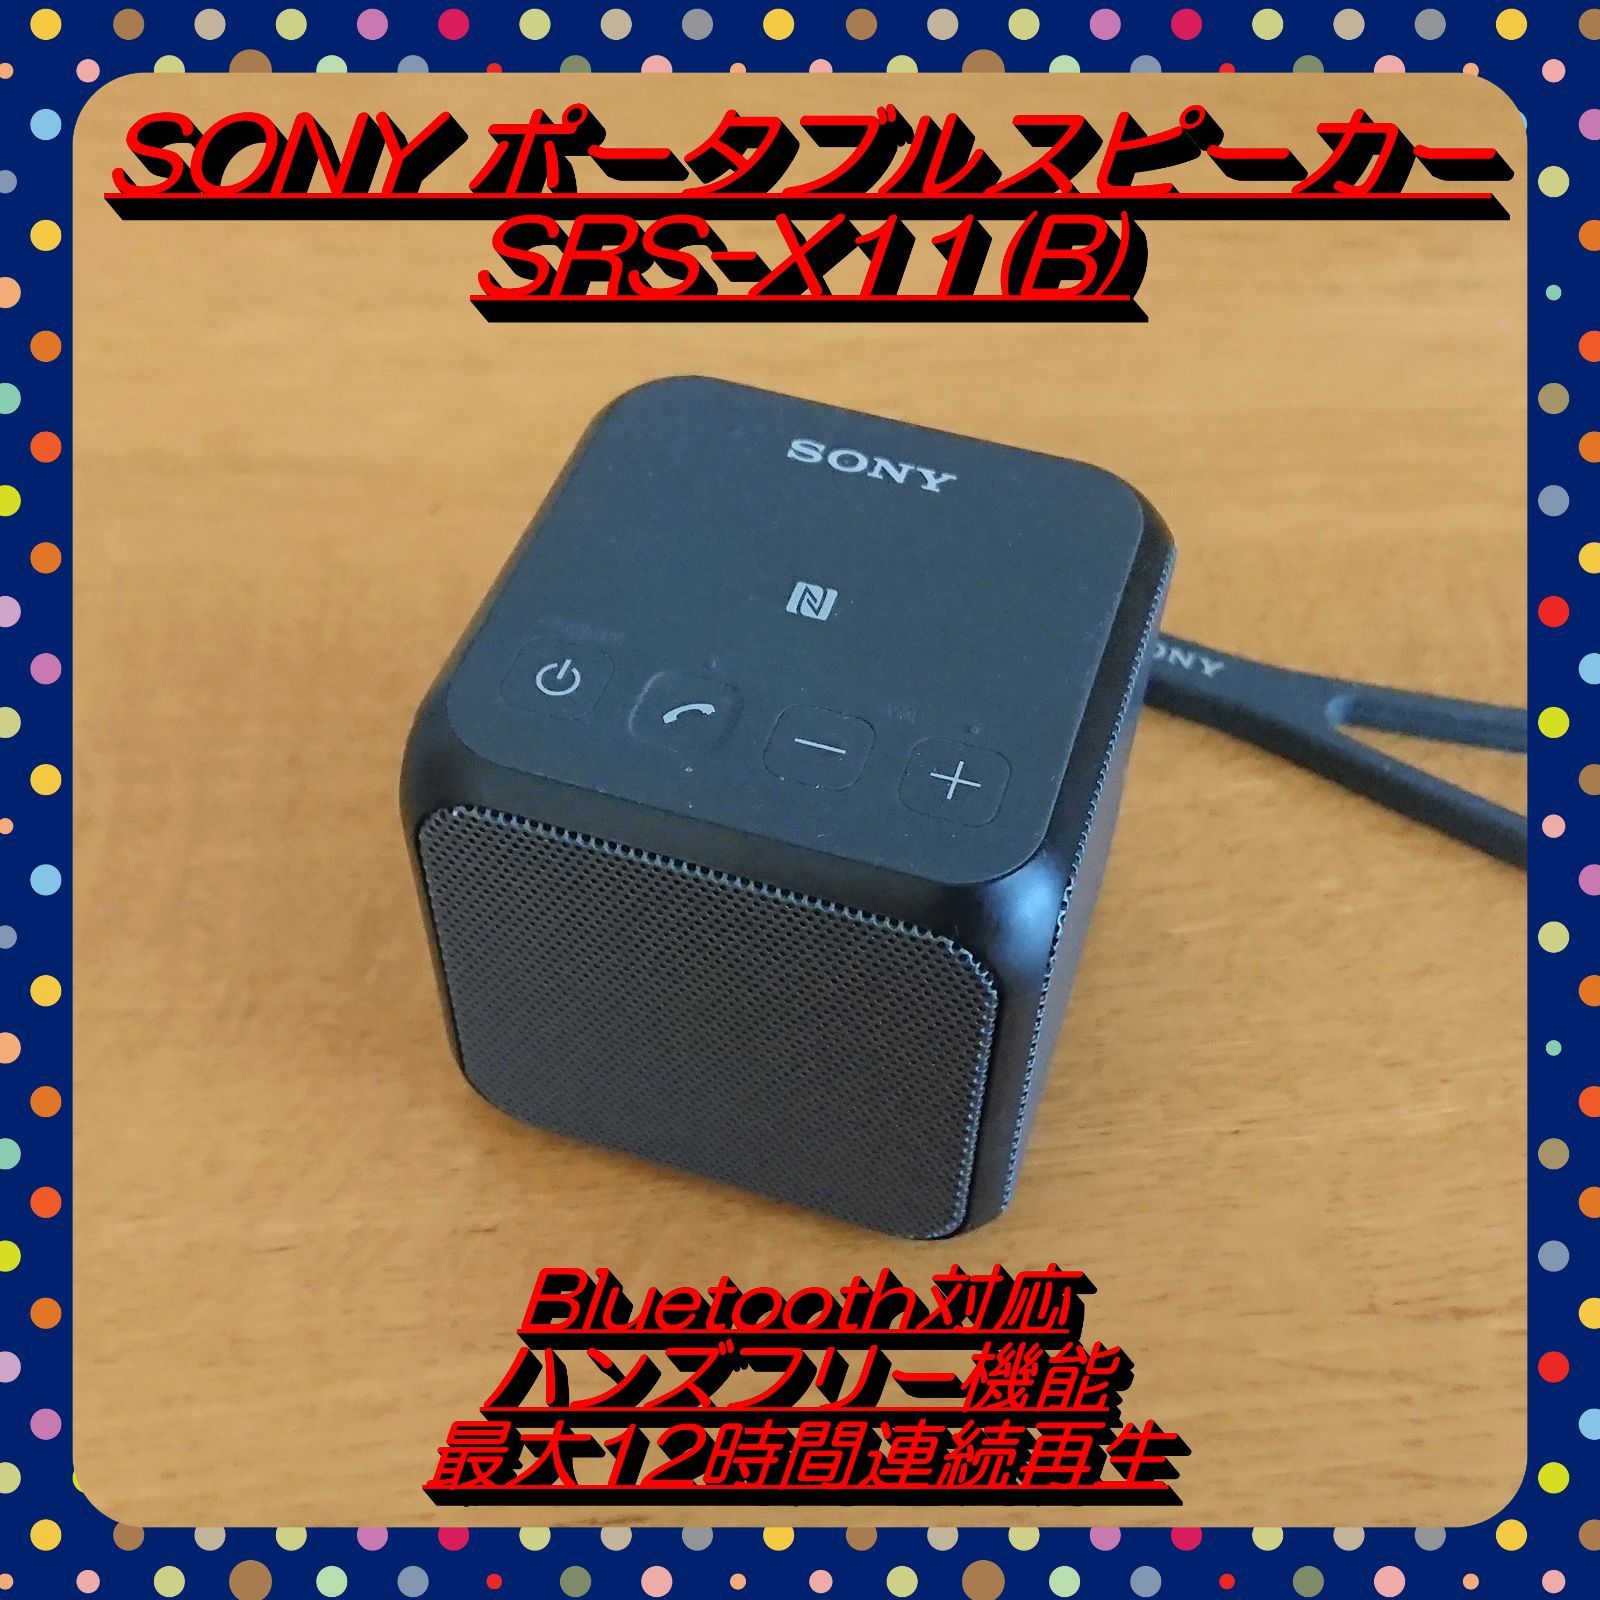 ソニー bluetoothスピーカーブラック SRS-X11-BC - スピーカー